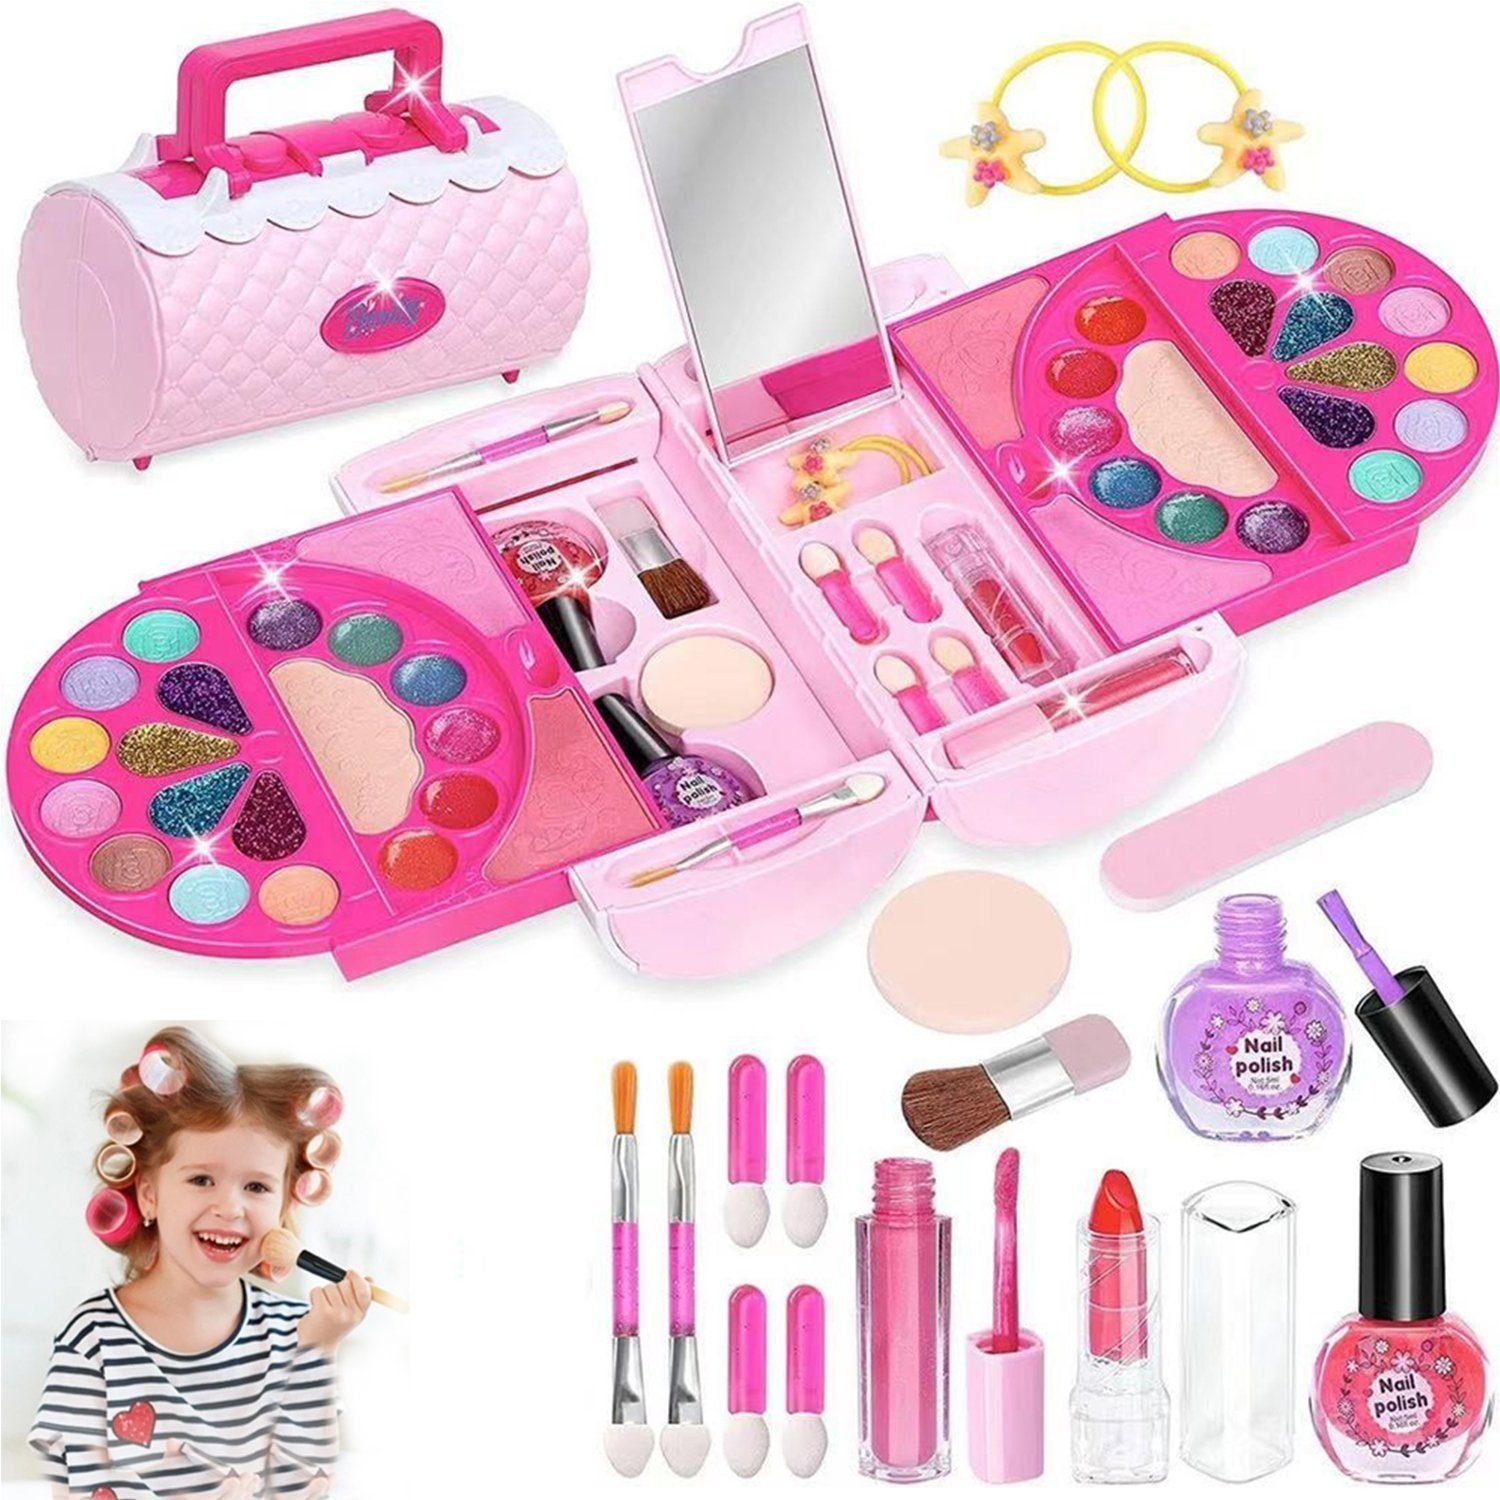 Kinder Make-up Sets für Mädchen, waschbare Kinder Make Up Kit